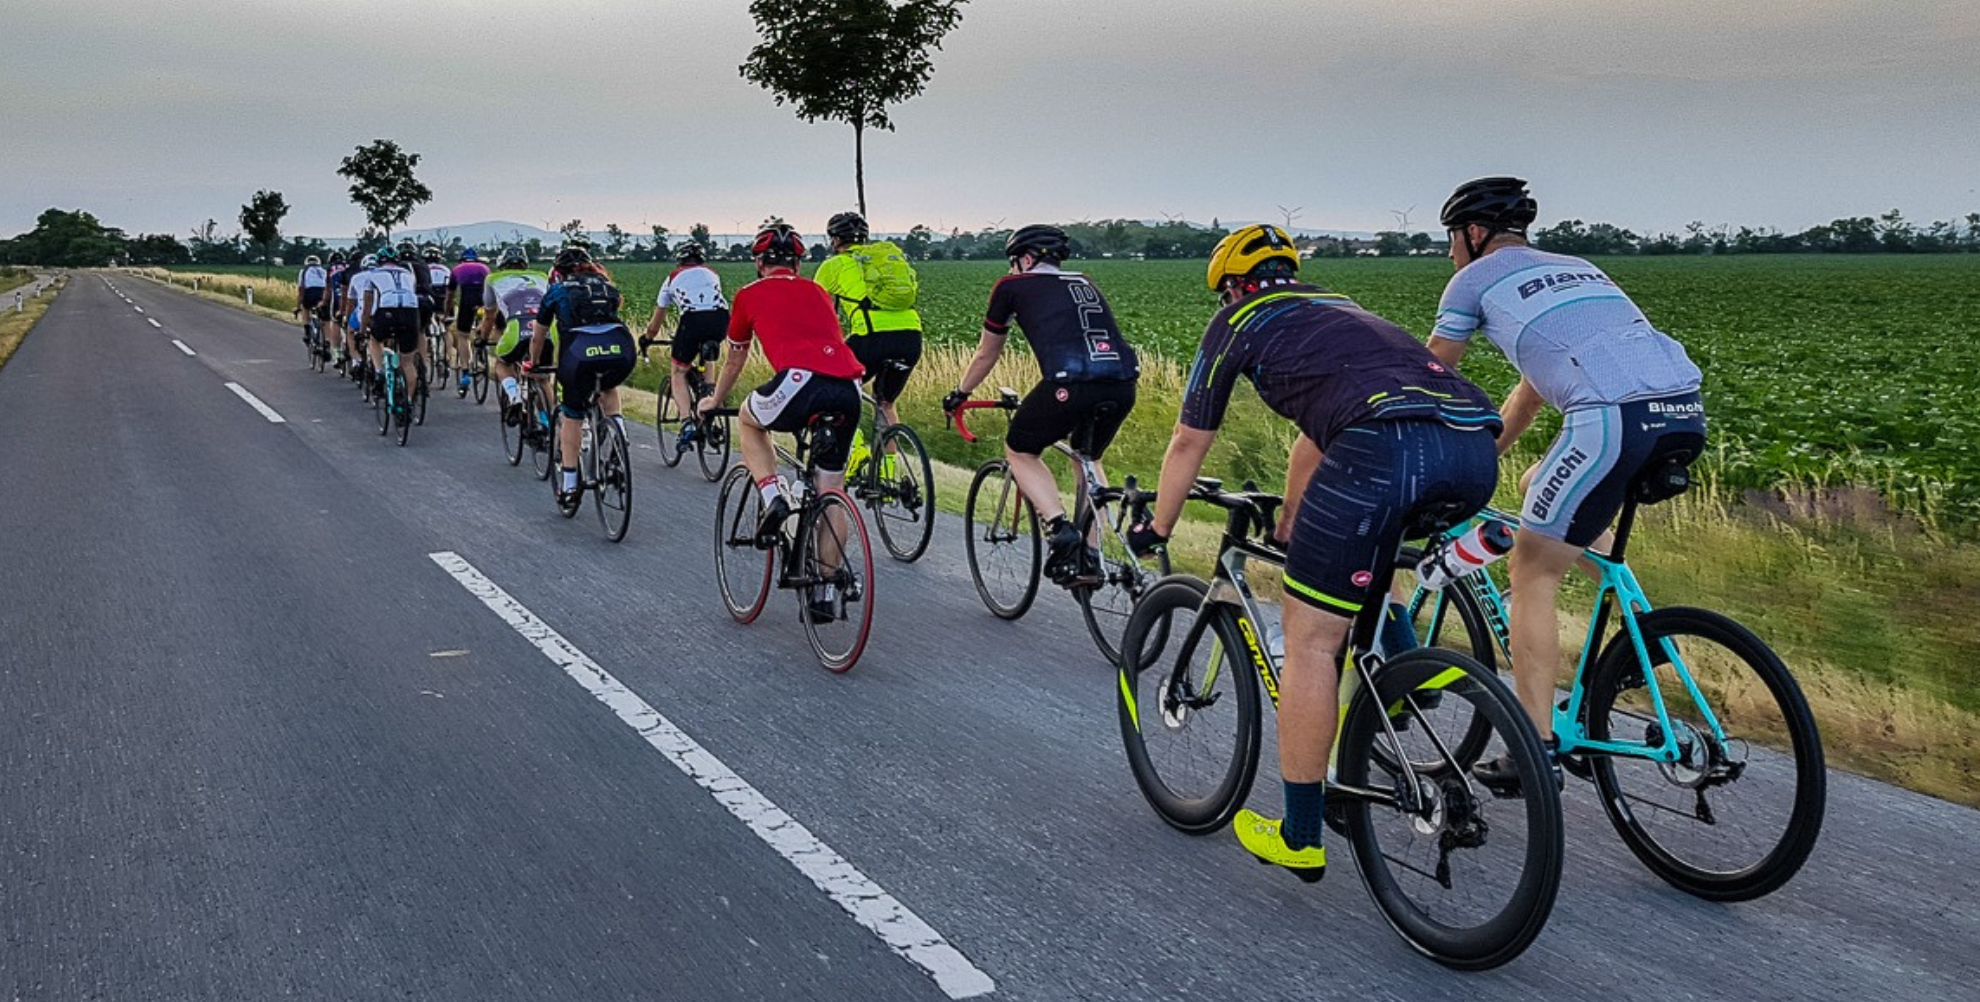 Spoločné štvrtkové jazdy s Road Bike Bratislava aj v sezóne 2020